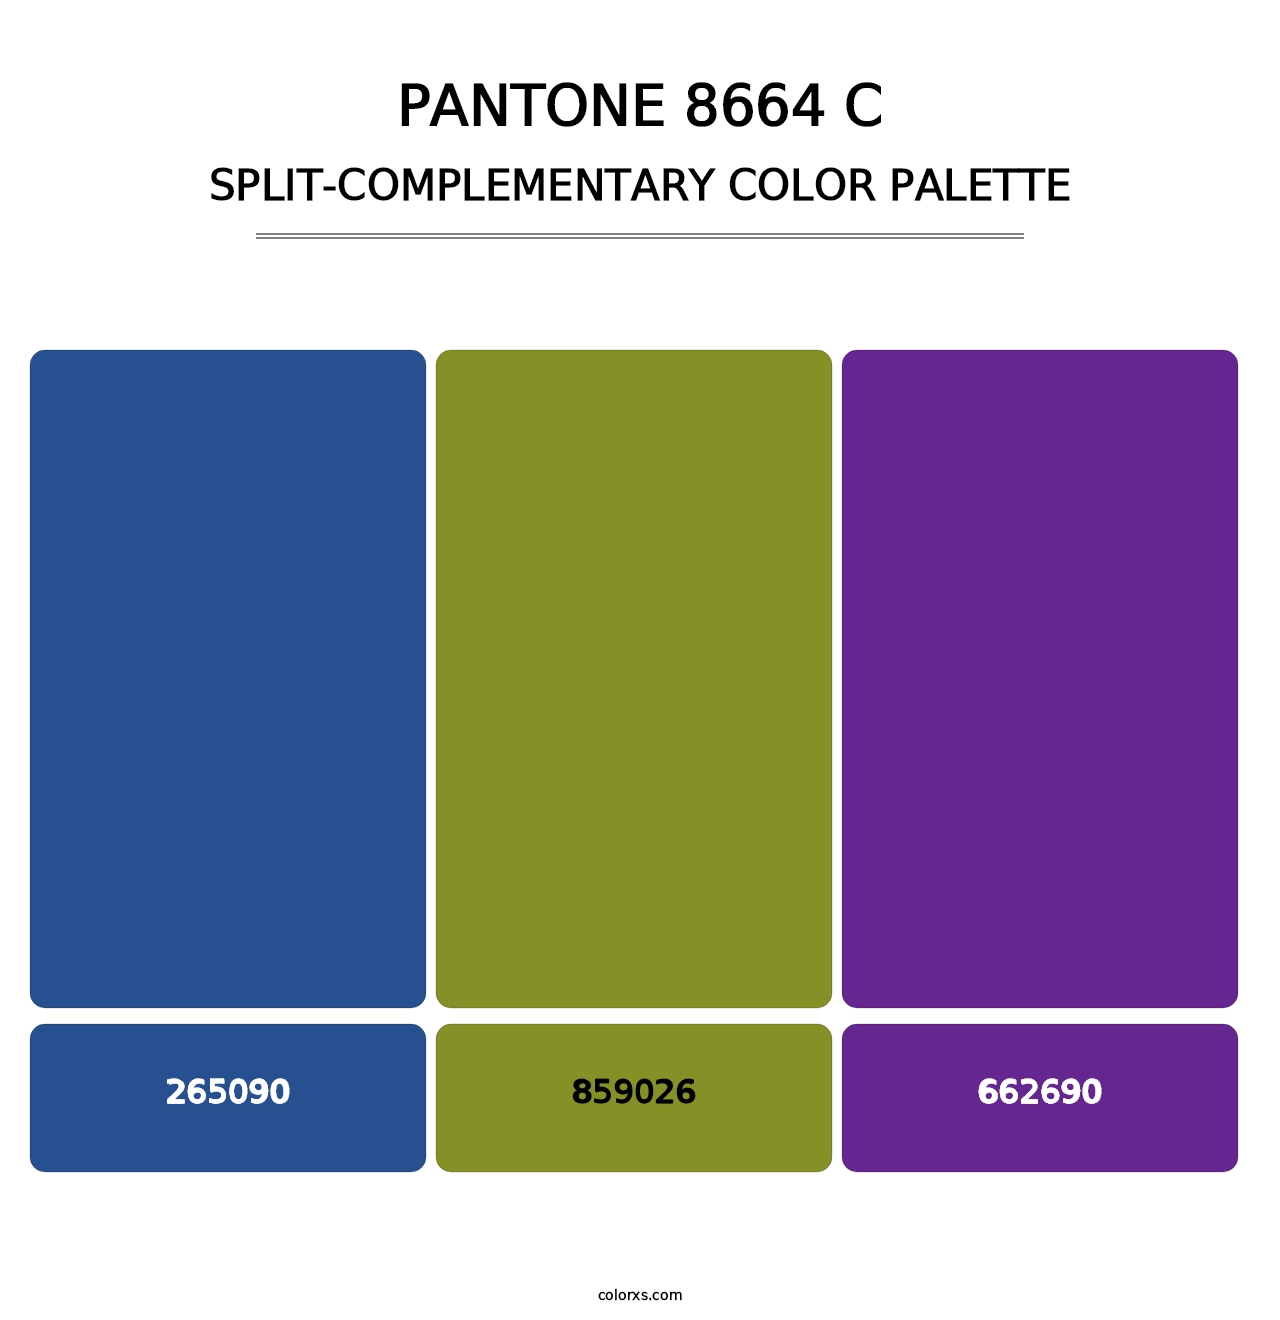 PANTONE 8664 C - Split-Complementary Color Palette